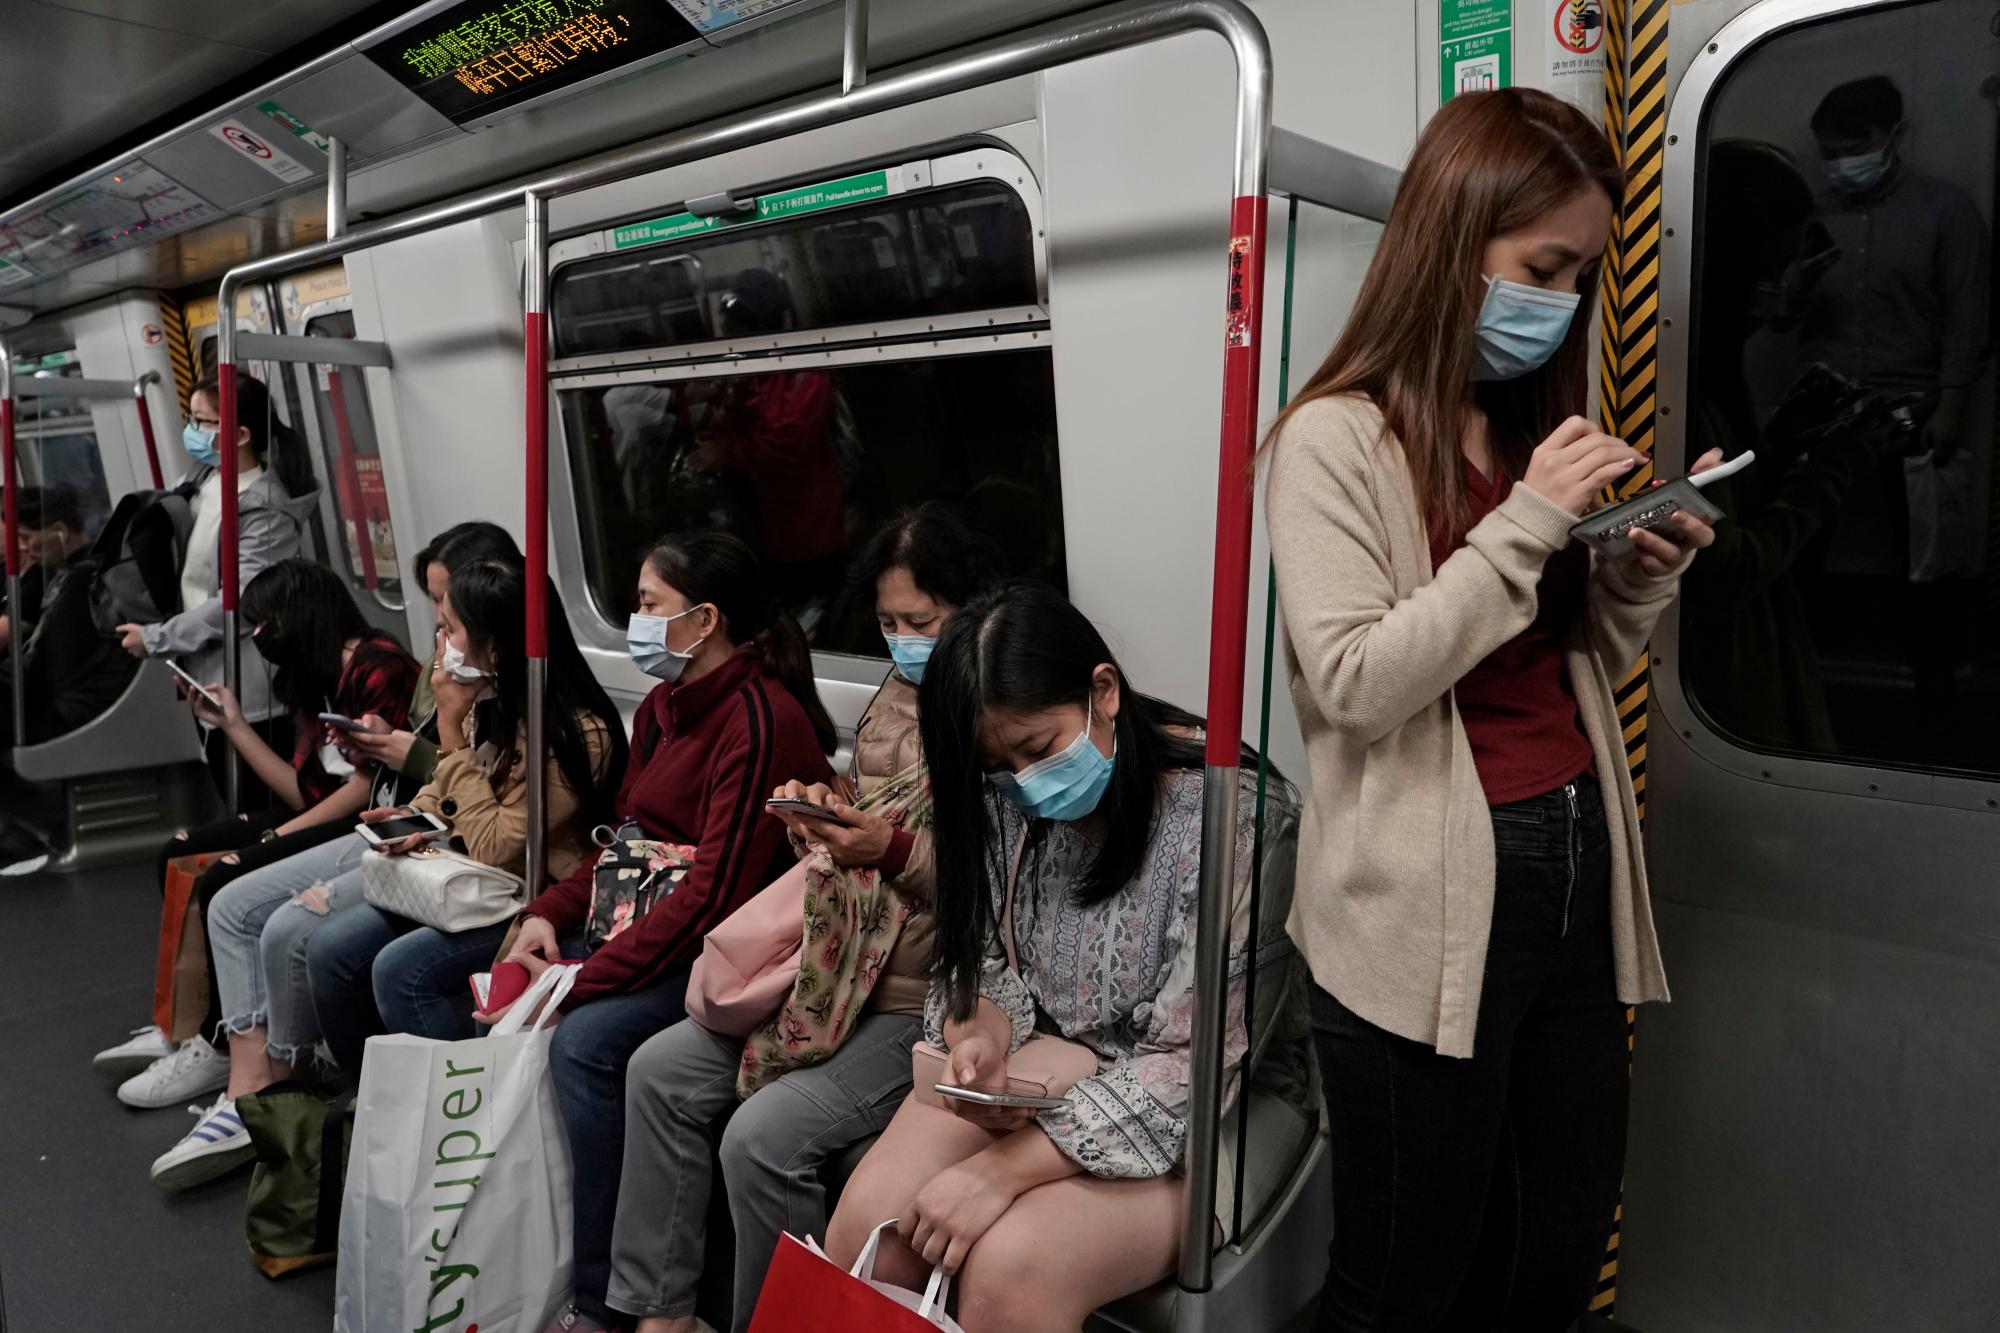 Los pasajeros usan máscaras faciales protectoras en un tren subterráneo en Hong Kong, el jueves 23 de enero de 2020. China cerró el jueves una ciudad de más de 11 millones de personas, deteniendo el transporte y advirtiendo contra reuniones públicas, para tratar de detener la propagación de nuevo virus mortal que ha enfermado a cientos y se ha extendido a otras ciudades y países en la carrera de viajes del Año Nuevo Lunar. 